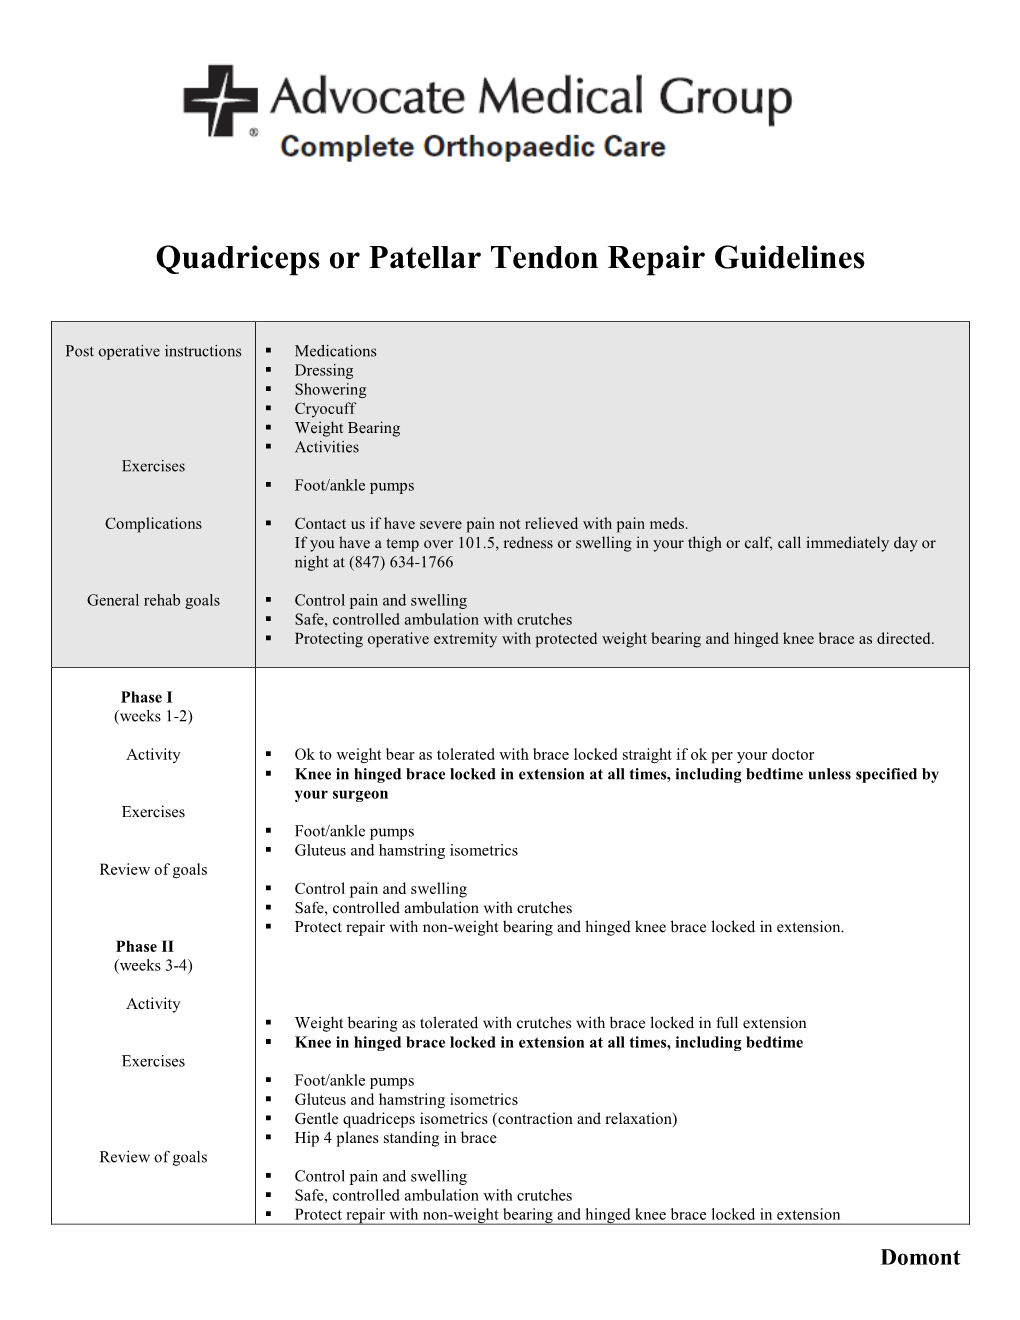 Patellar/Quadriceps Tendon Repair